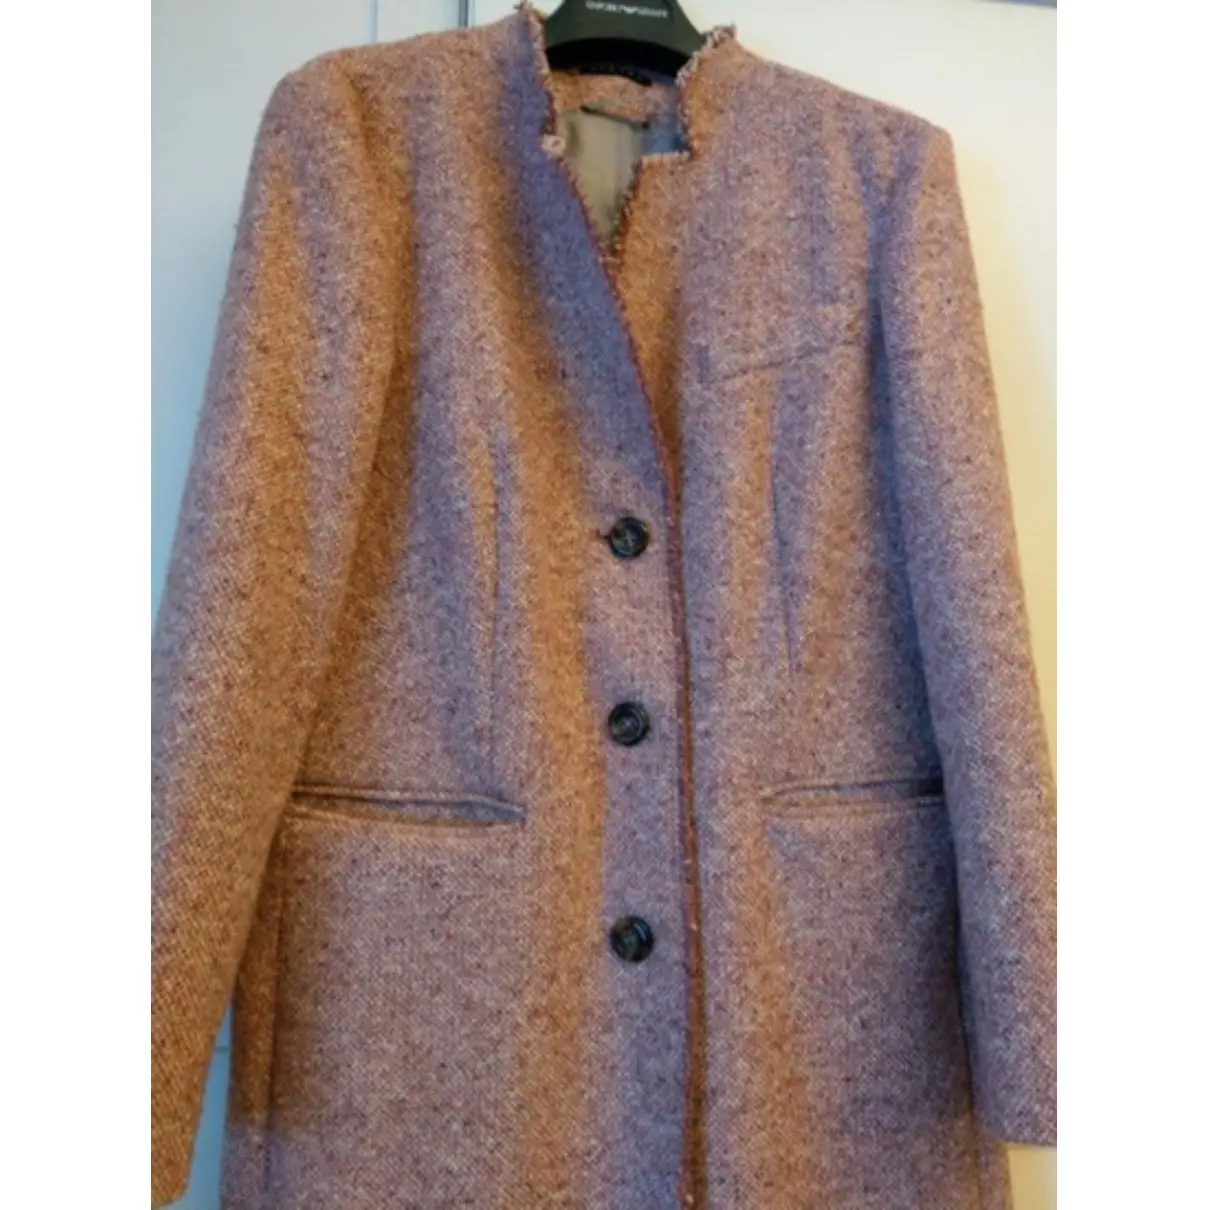 Buy SISLEY Wool coat online